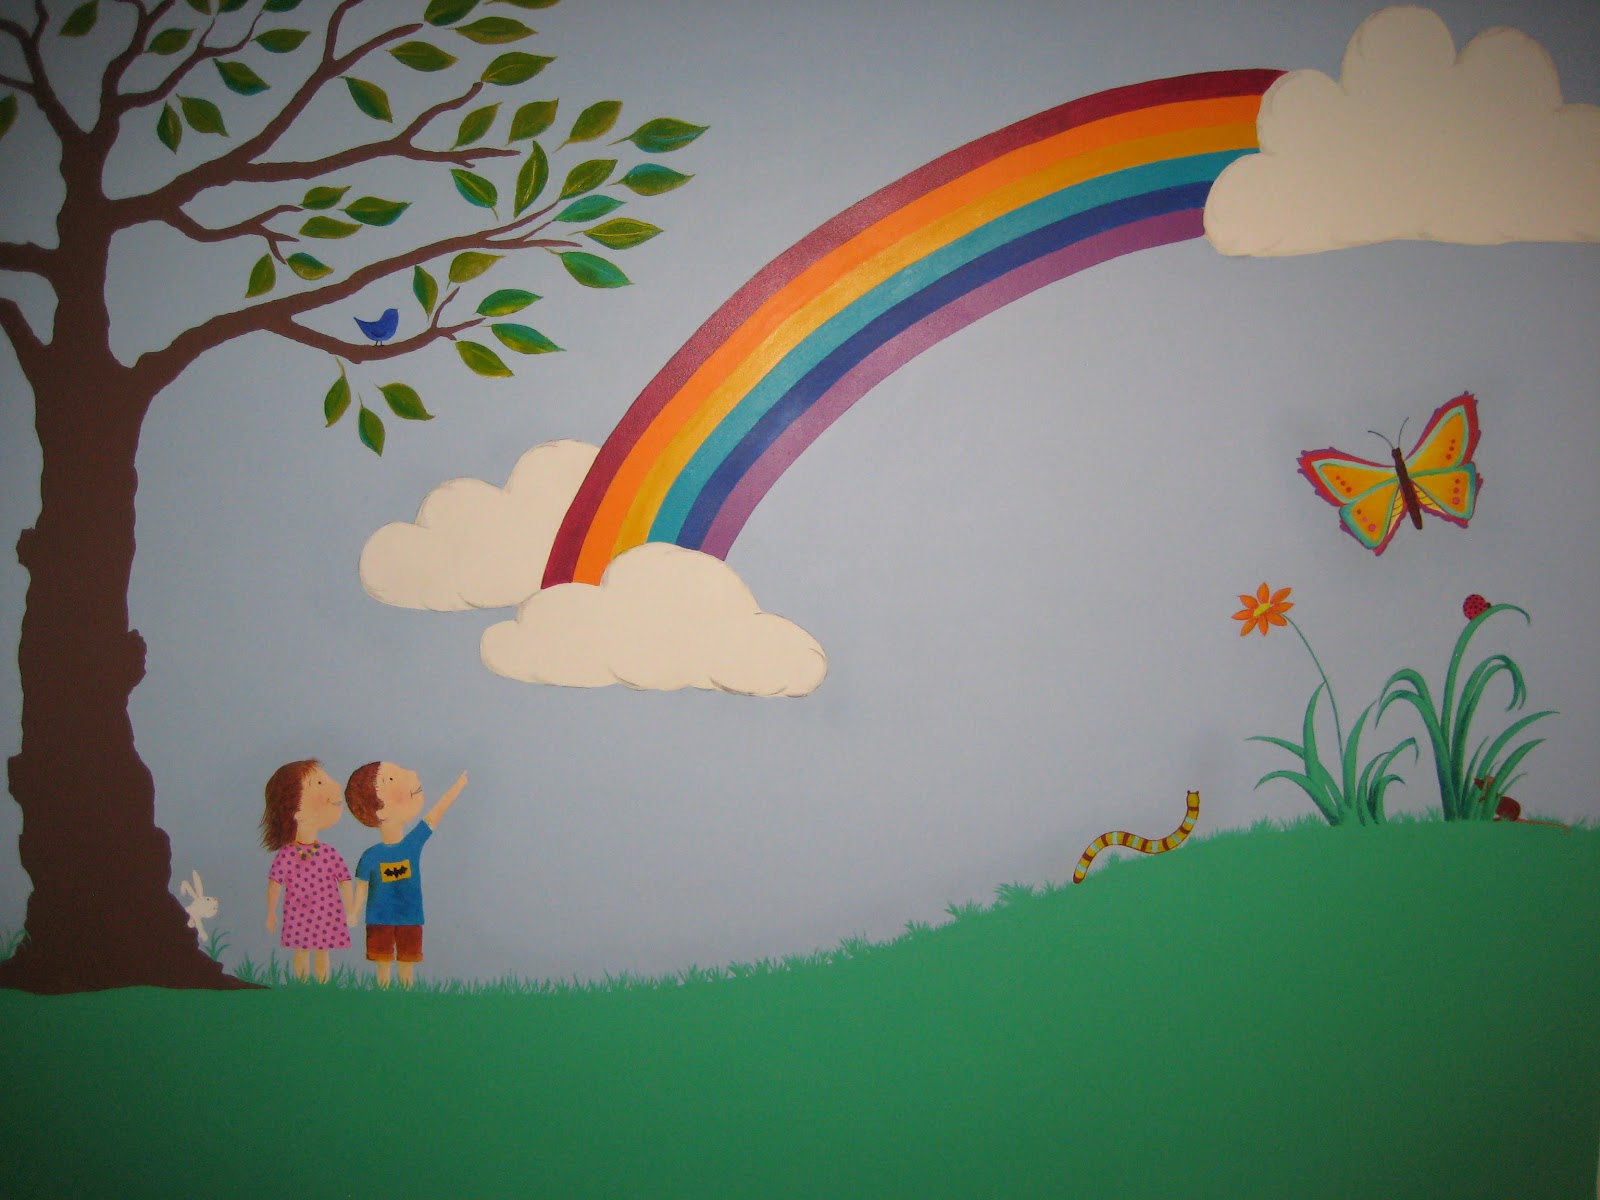 寝室のための虹の壁紙,虹,壁画,壁,ペインティング,空